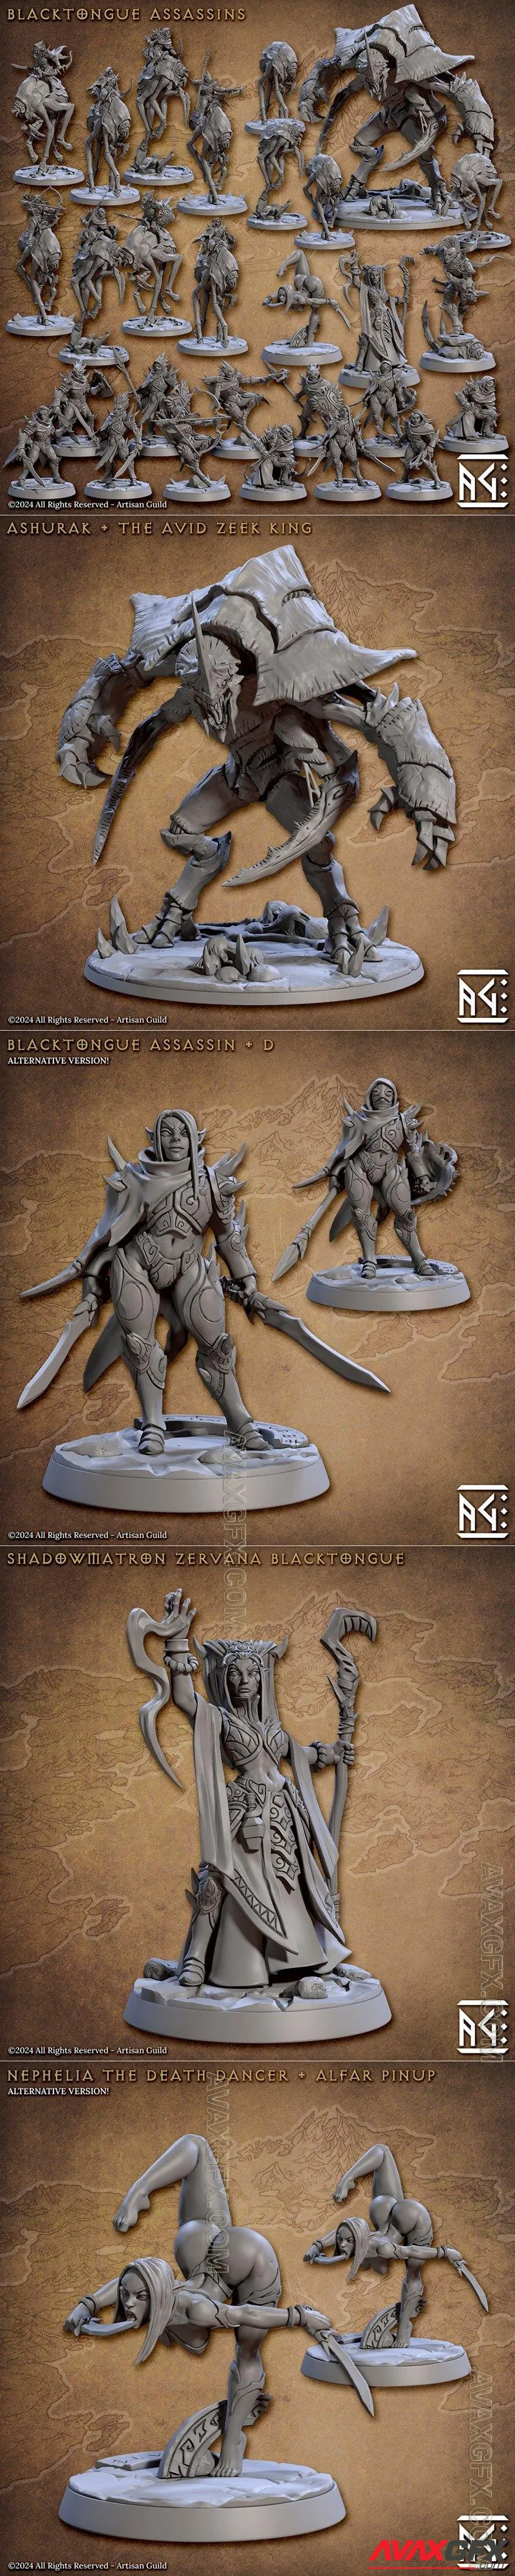 Artisan Guild - Blacktongue Assassins Complete Set - 57 - STL 3D Model